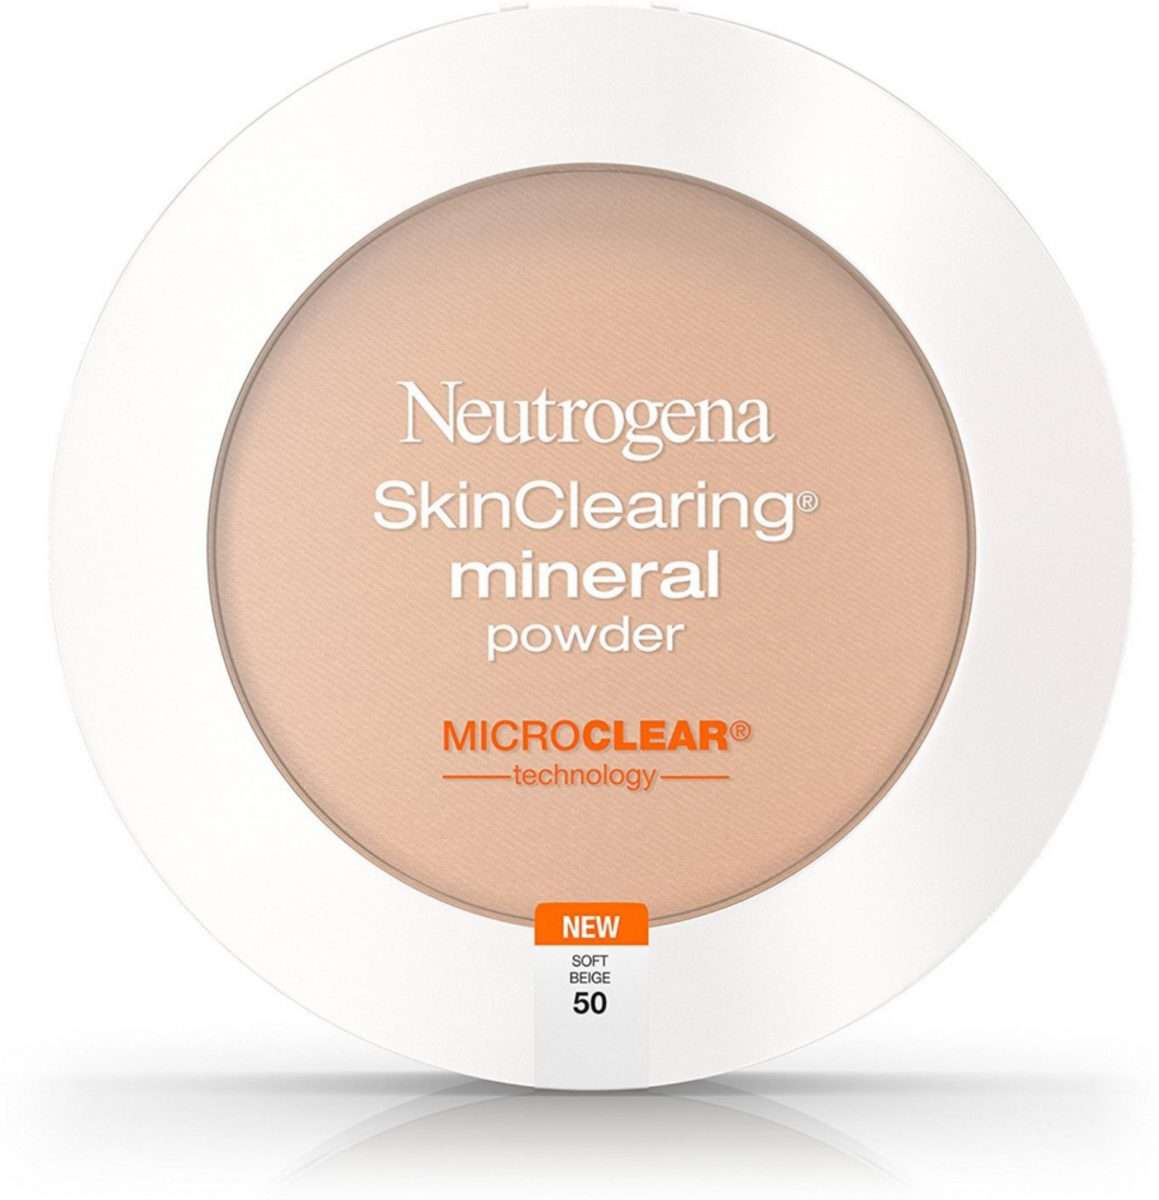 Neutrogena SkinClearing Mineral Powder, Soft Beige [50] 0.38 oz ...